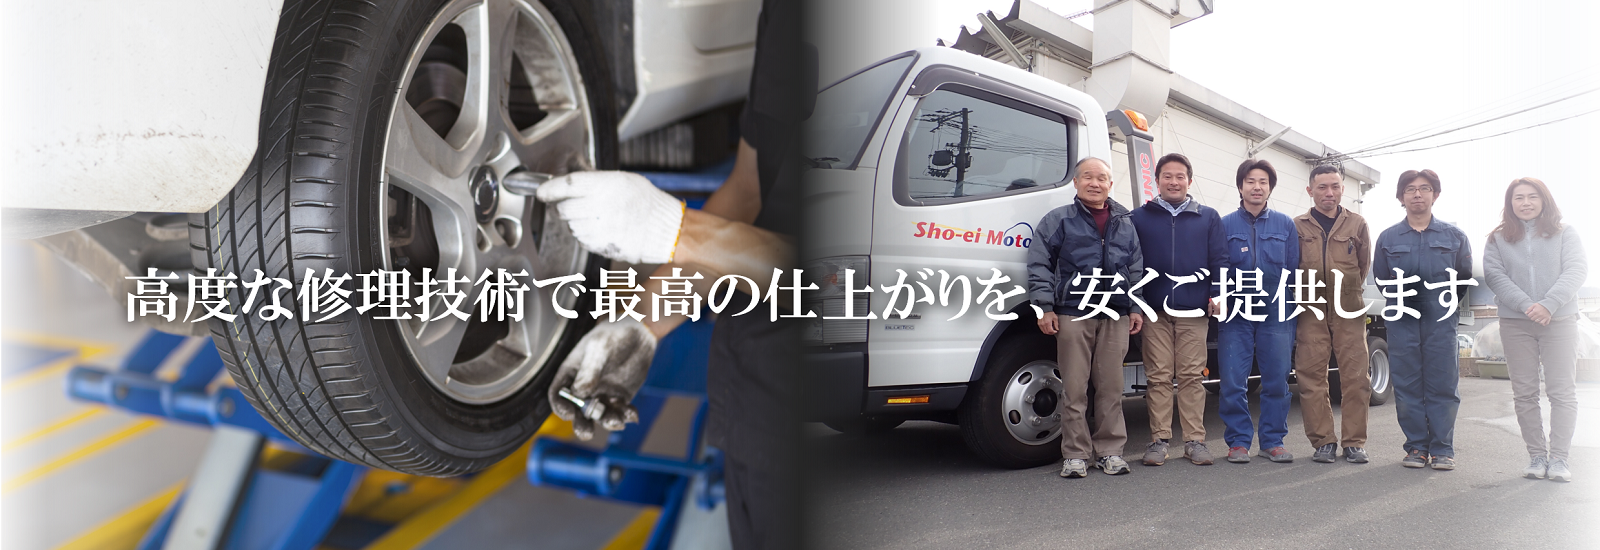 八尾市の車修理の彰英自動車